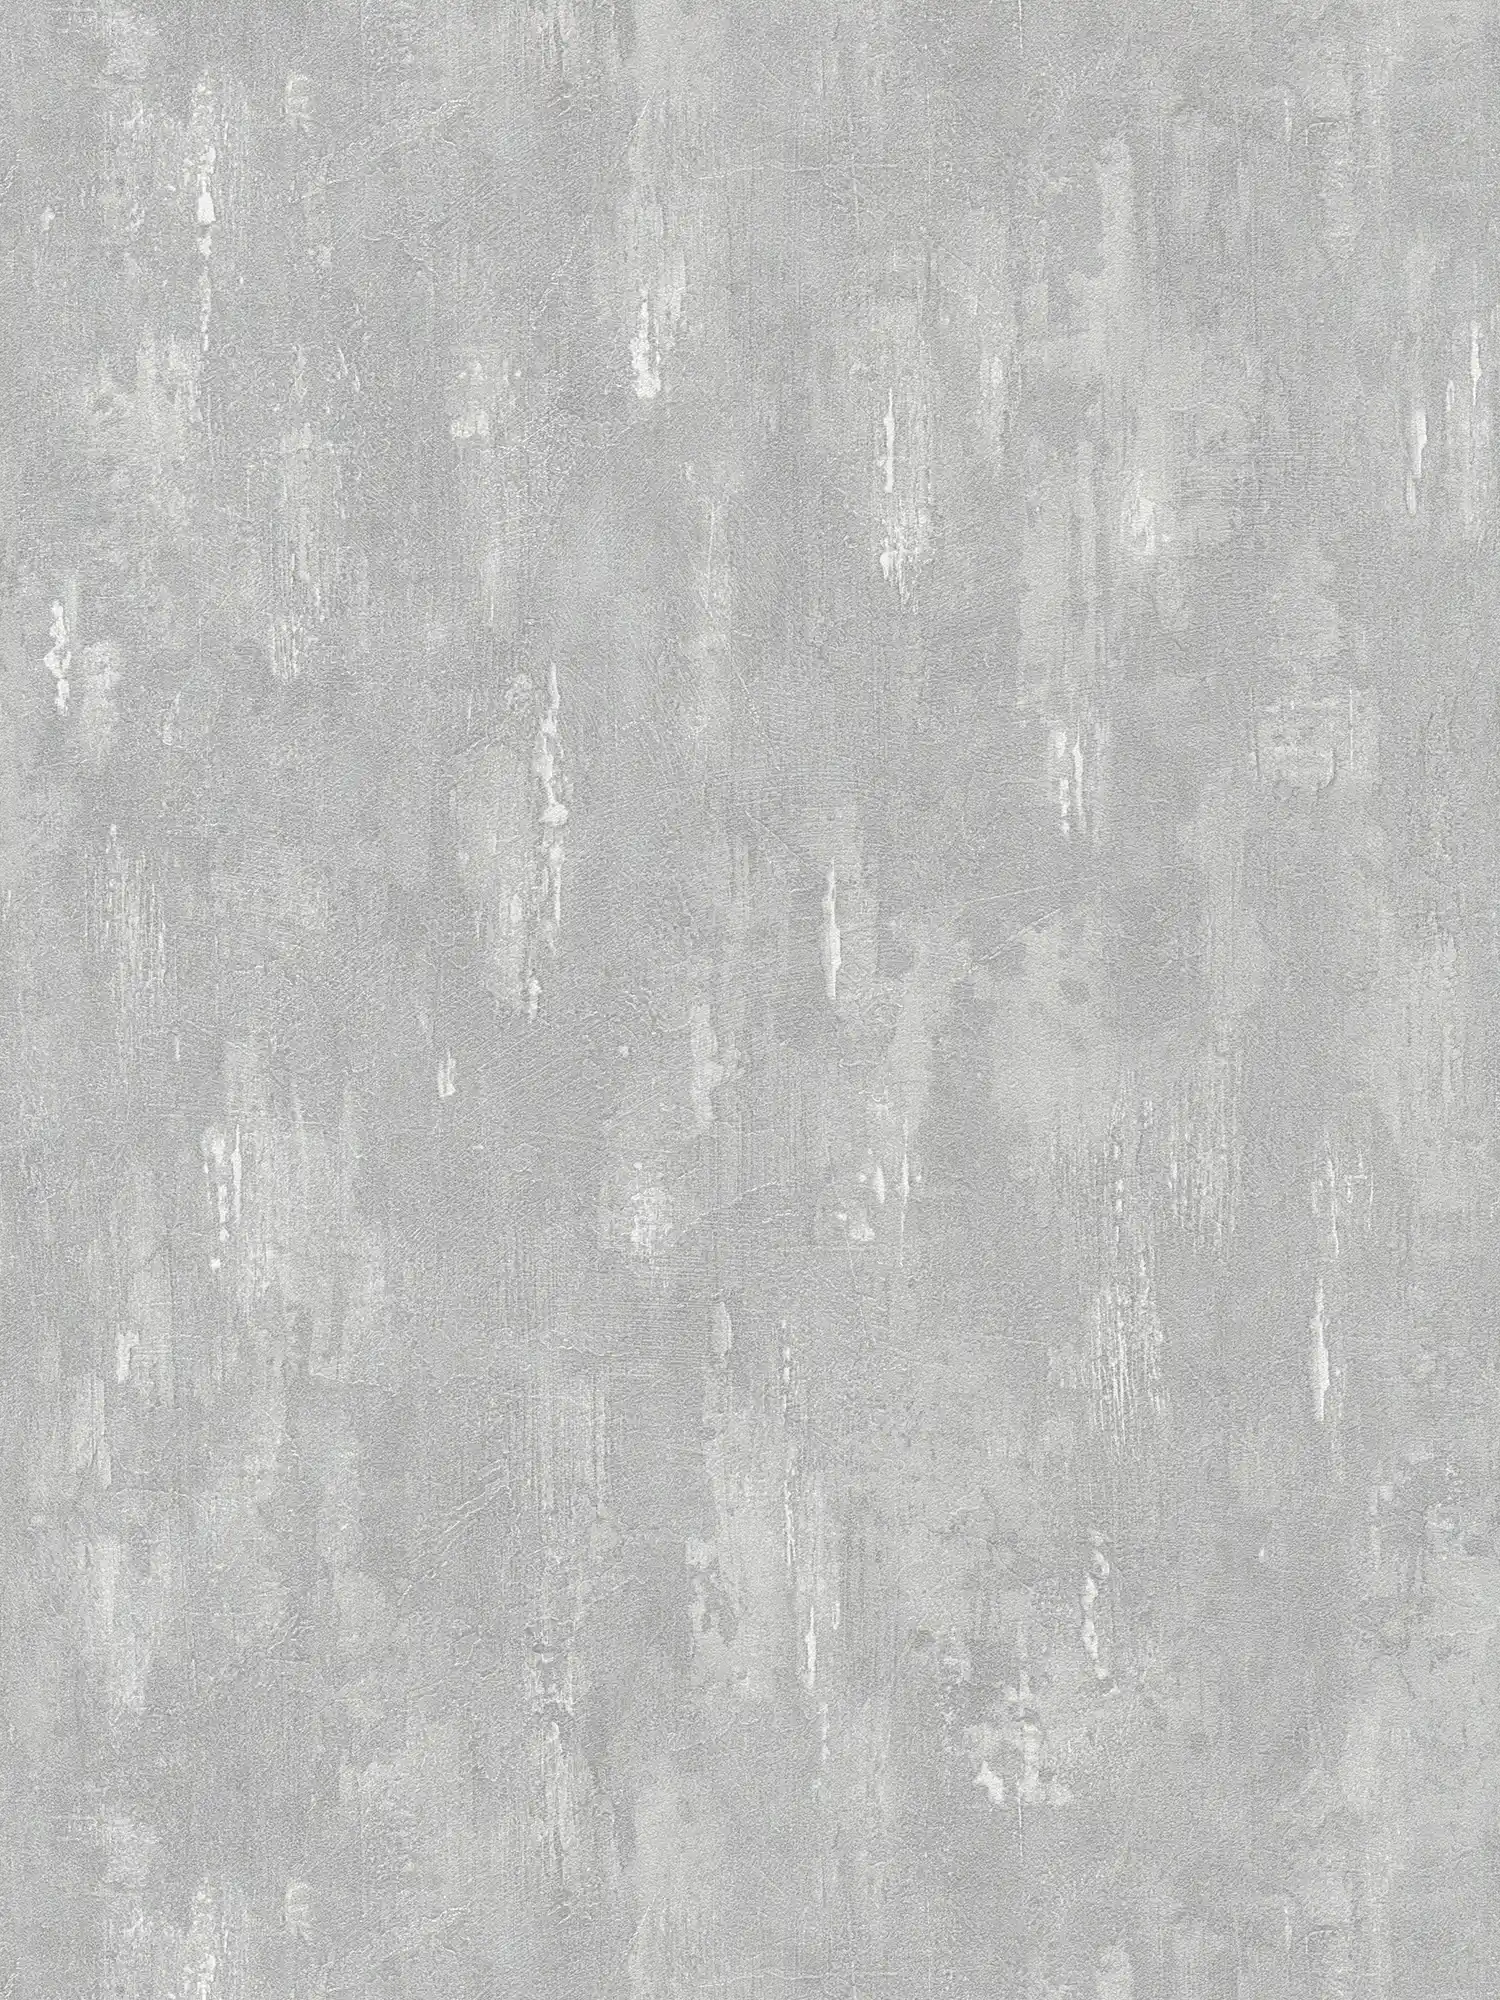 Tapete mit Putz-Struktur, Betonoptik und Farbverlauf – Grau
